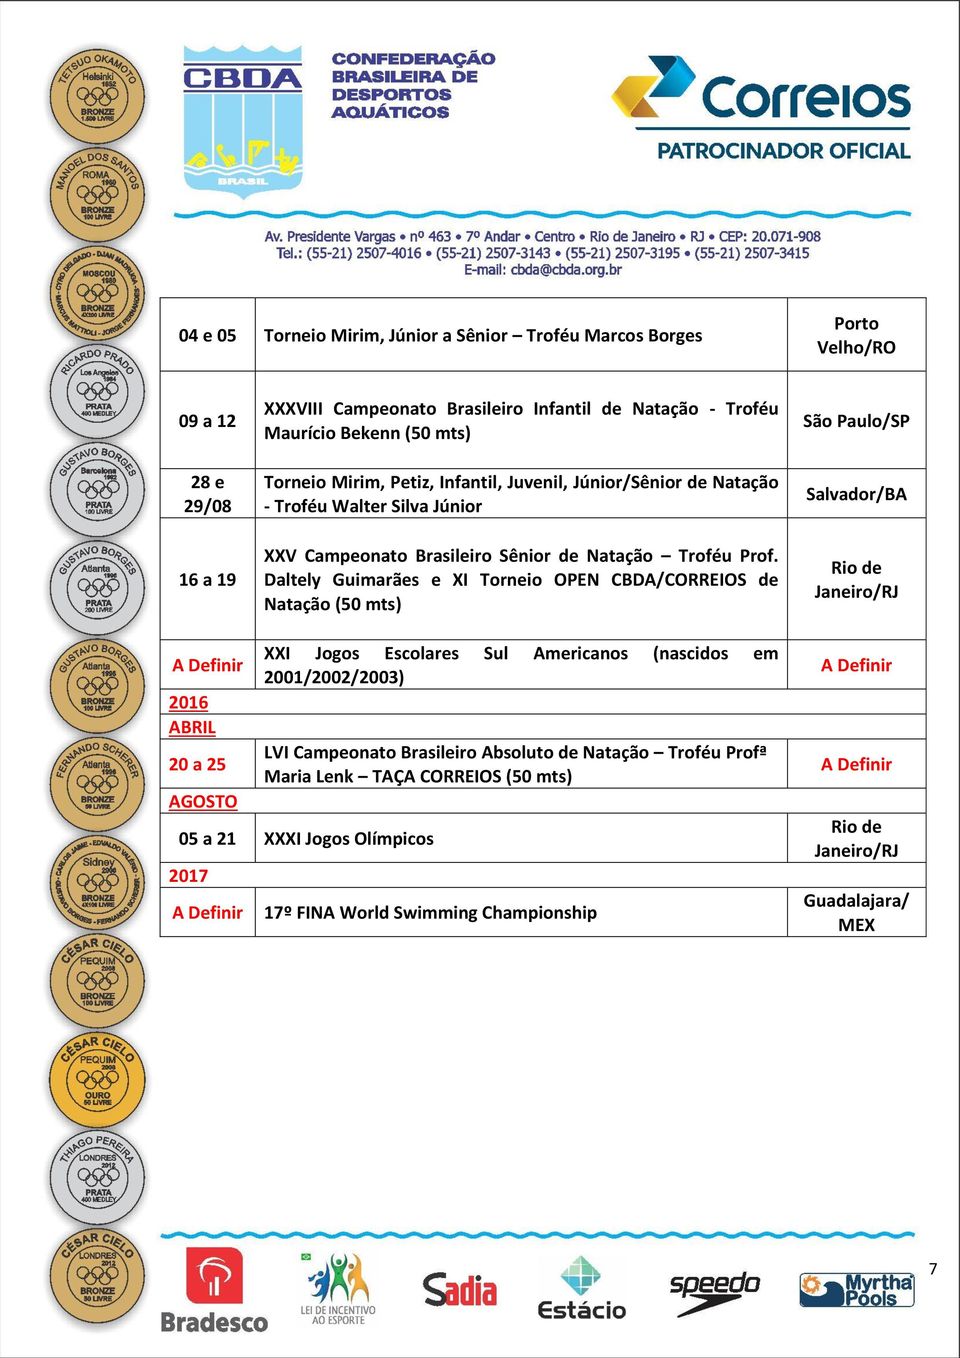 Daltely Guimarães e XI Torneio OPEN CBDA/CORREIOS de Natação (50 mts) São Paulo/SP 2016 ABRIL 20 a 25 AGOSTO XXI Jogos Escolares Sul Americanos (nascidos em 2001/2002/2003)